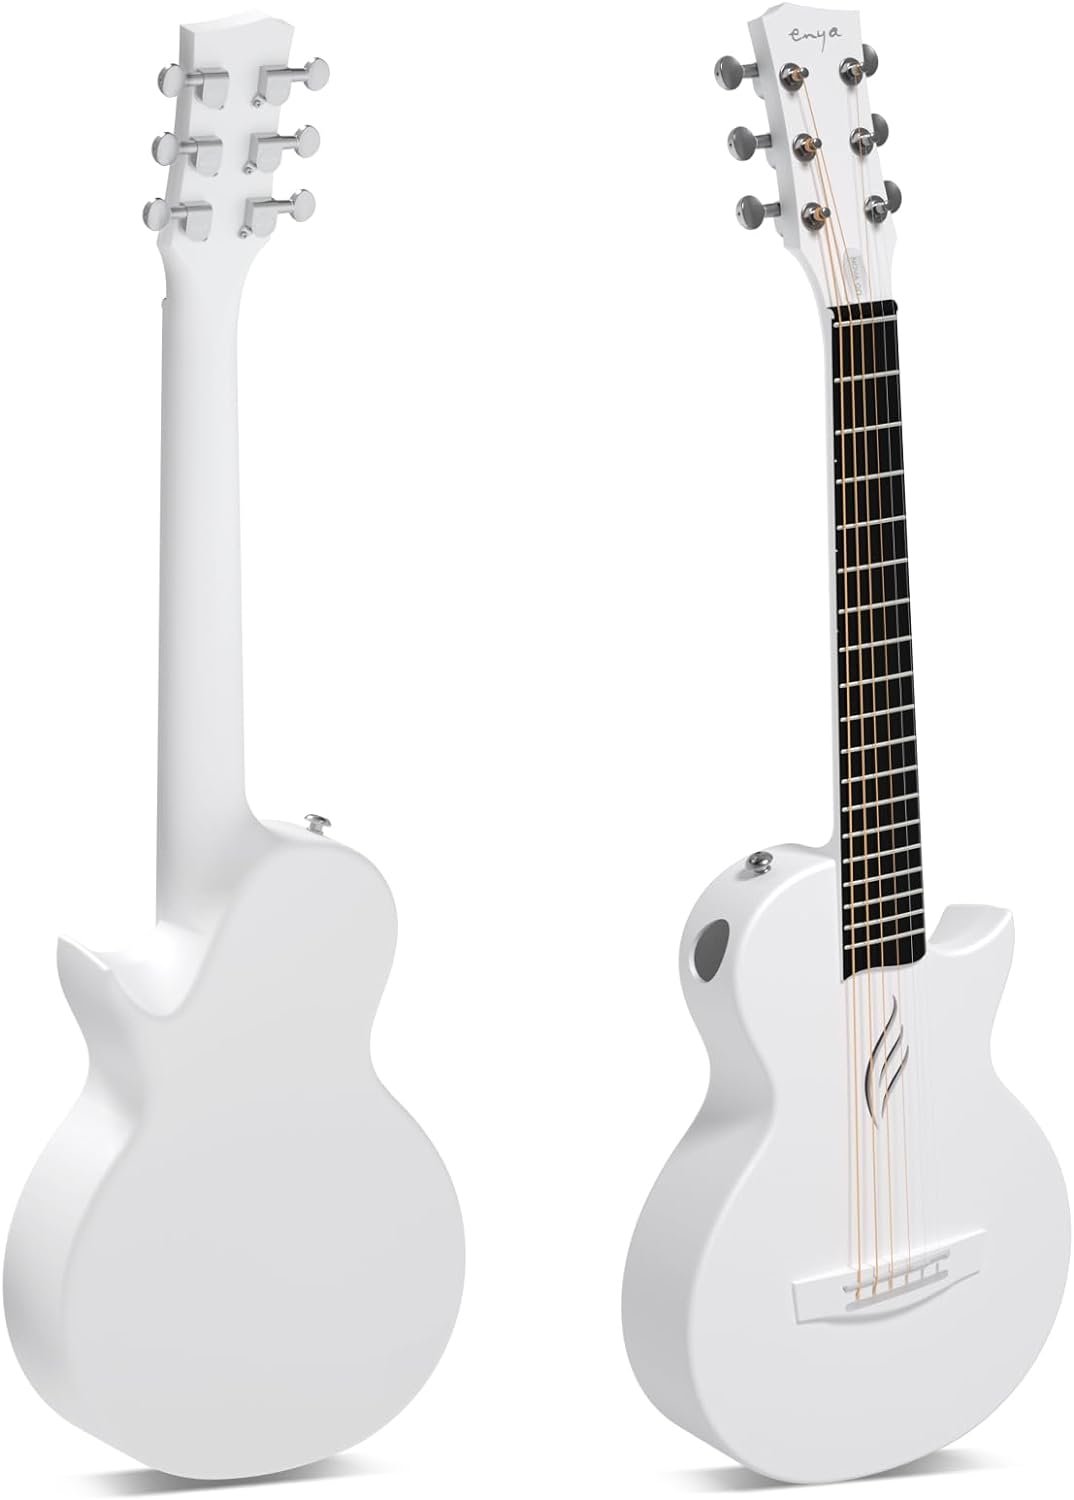 Enya Nova Go Carbon Fiber Acoustic Guitar Review